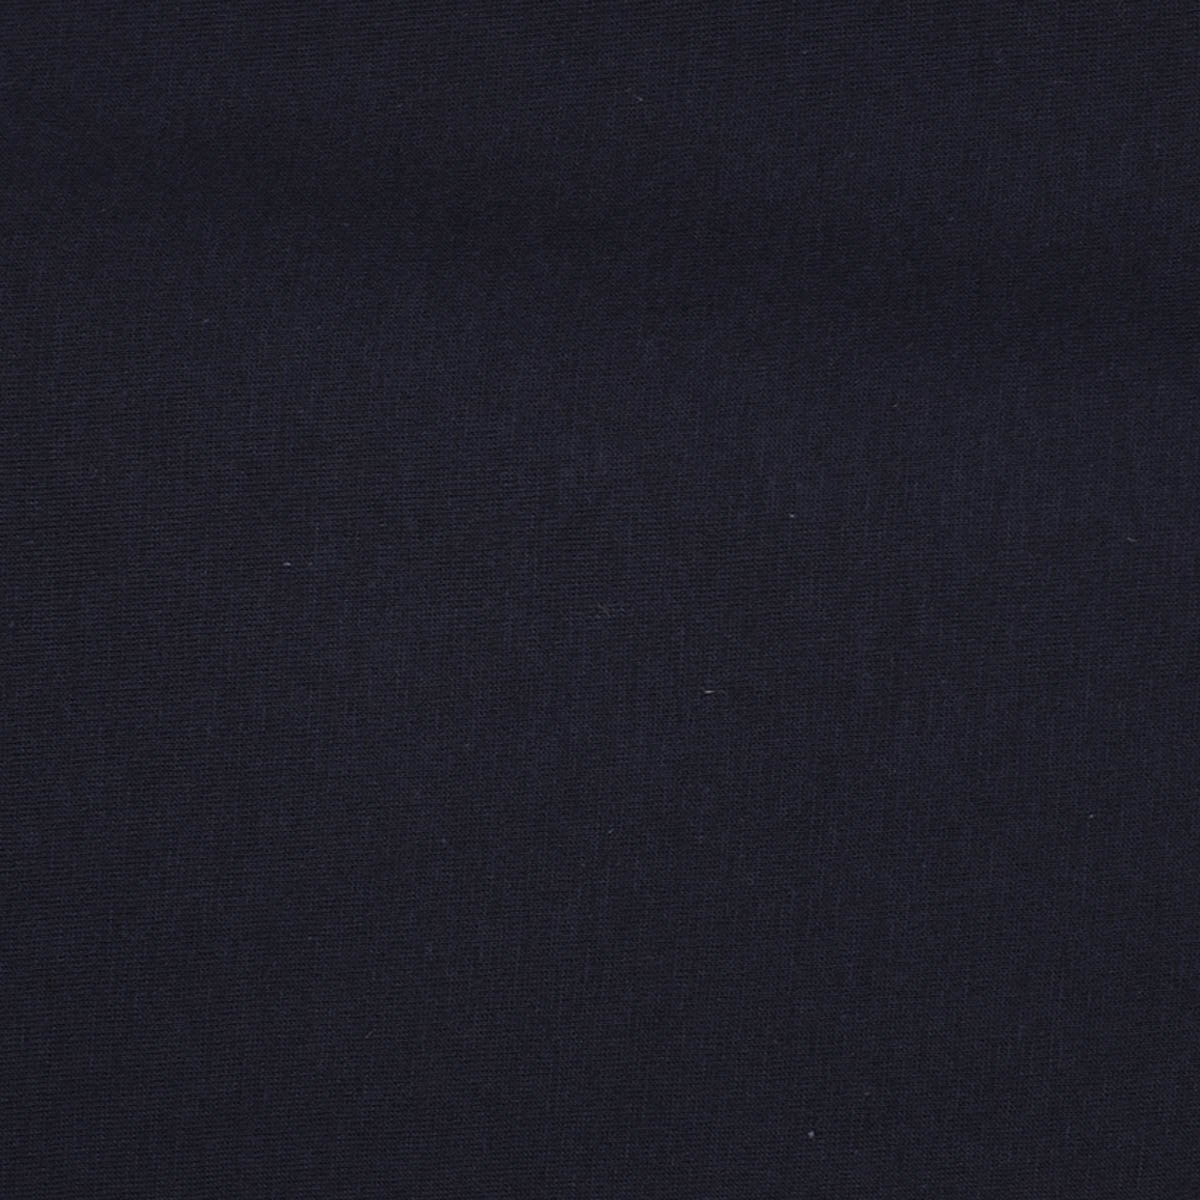 Playera Estampada Azul Obscuro para Caballero Polo Club Modelo B13B504